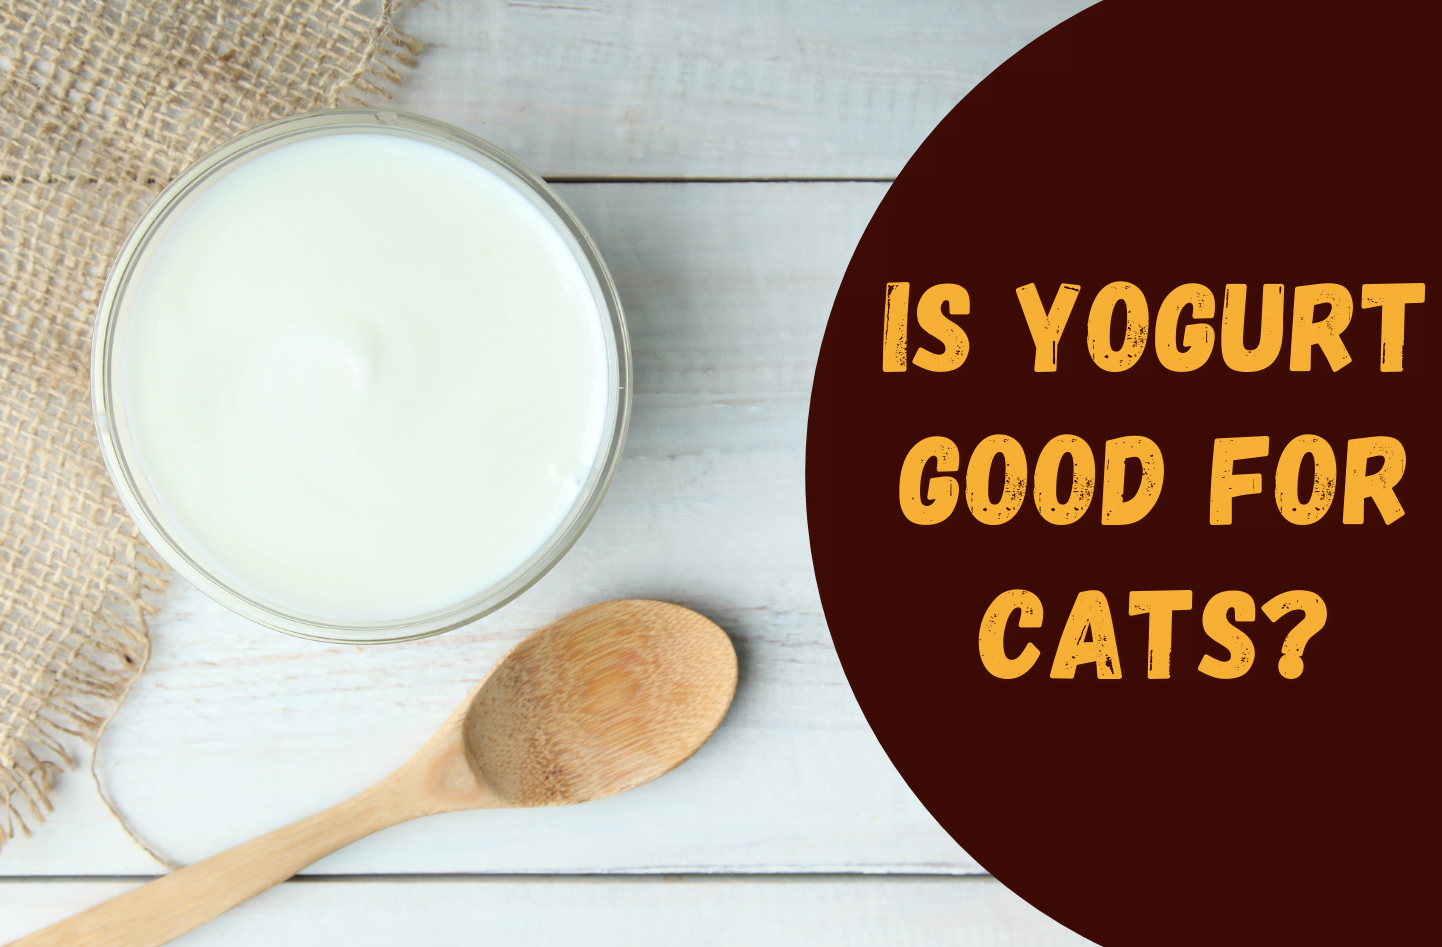 Can cats eat yogurt?